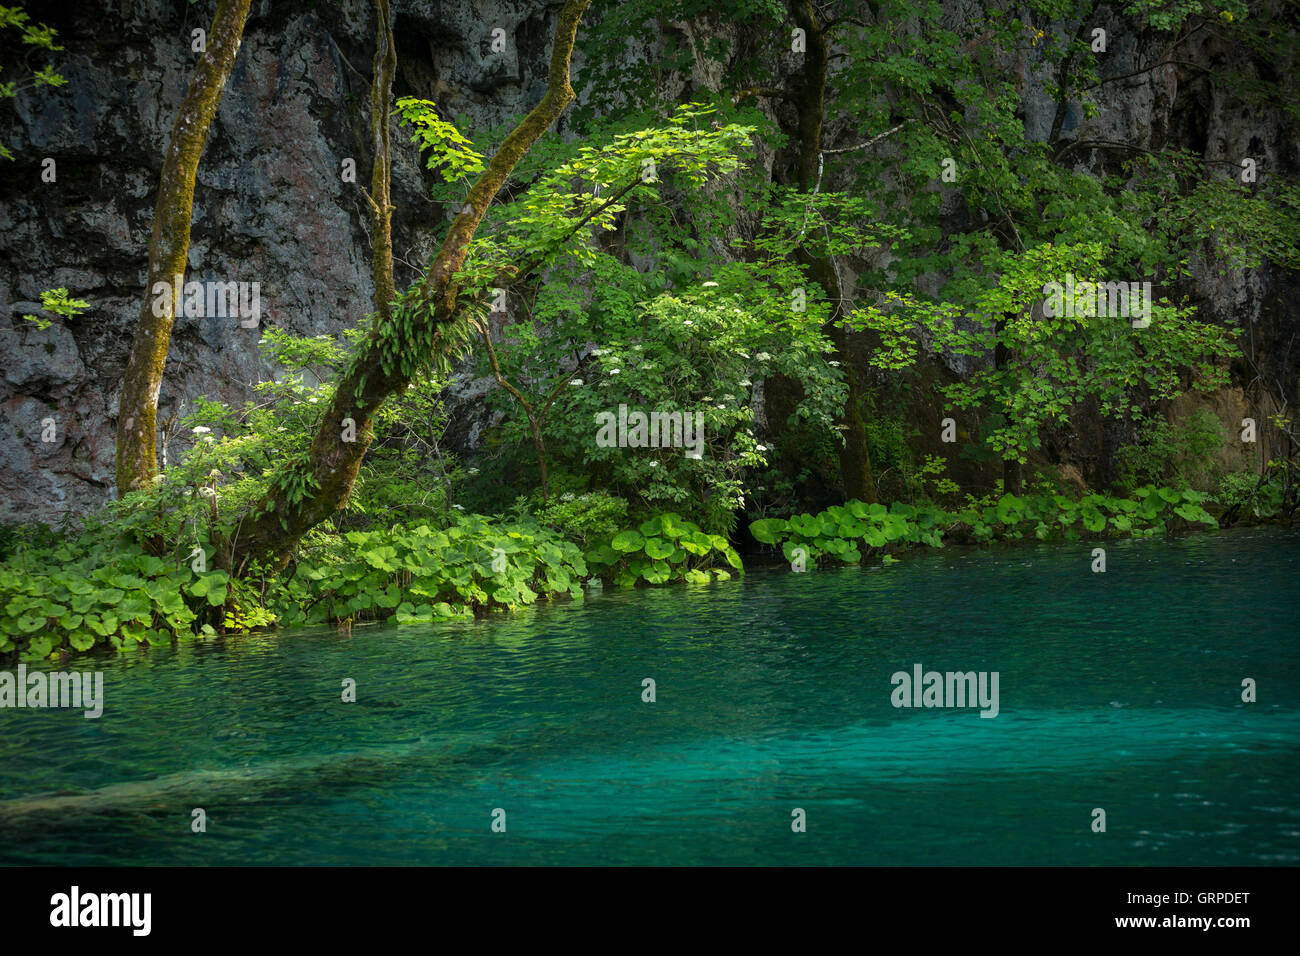 El río Korana bordeado por butterburs (Parque Nacional de Los Lagos de Plitvice (Croacia). Tres especies de Petasites crecer en esa área. Foto de stock